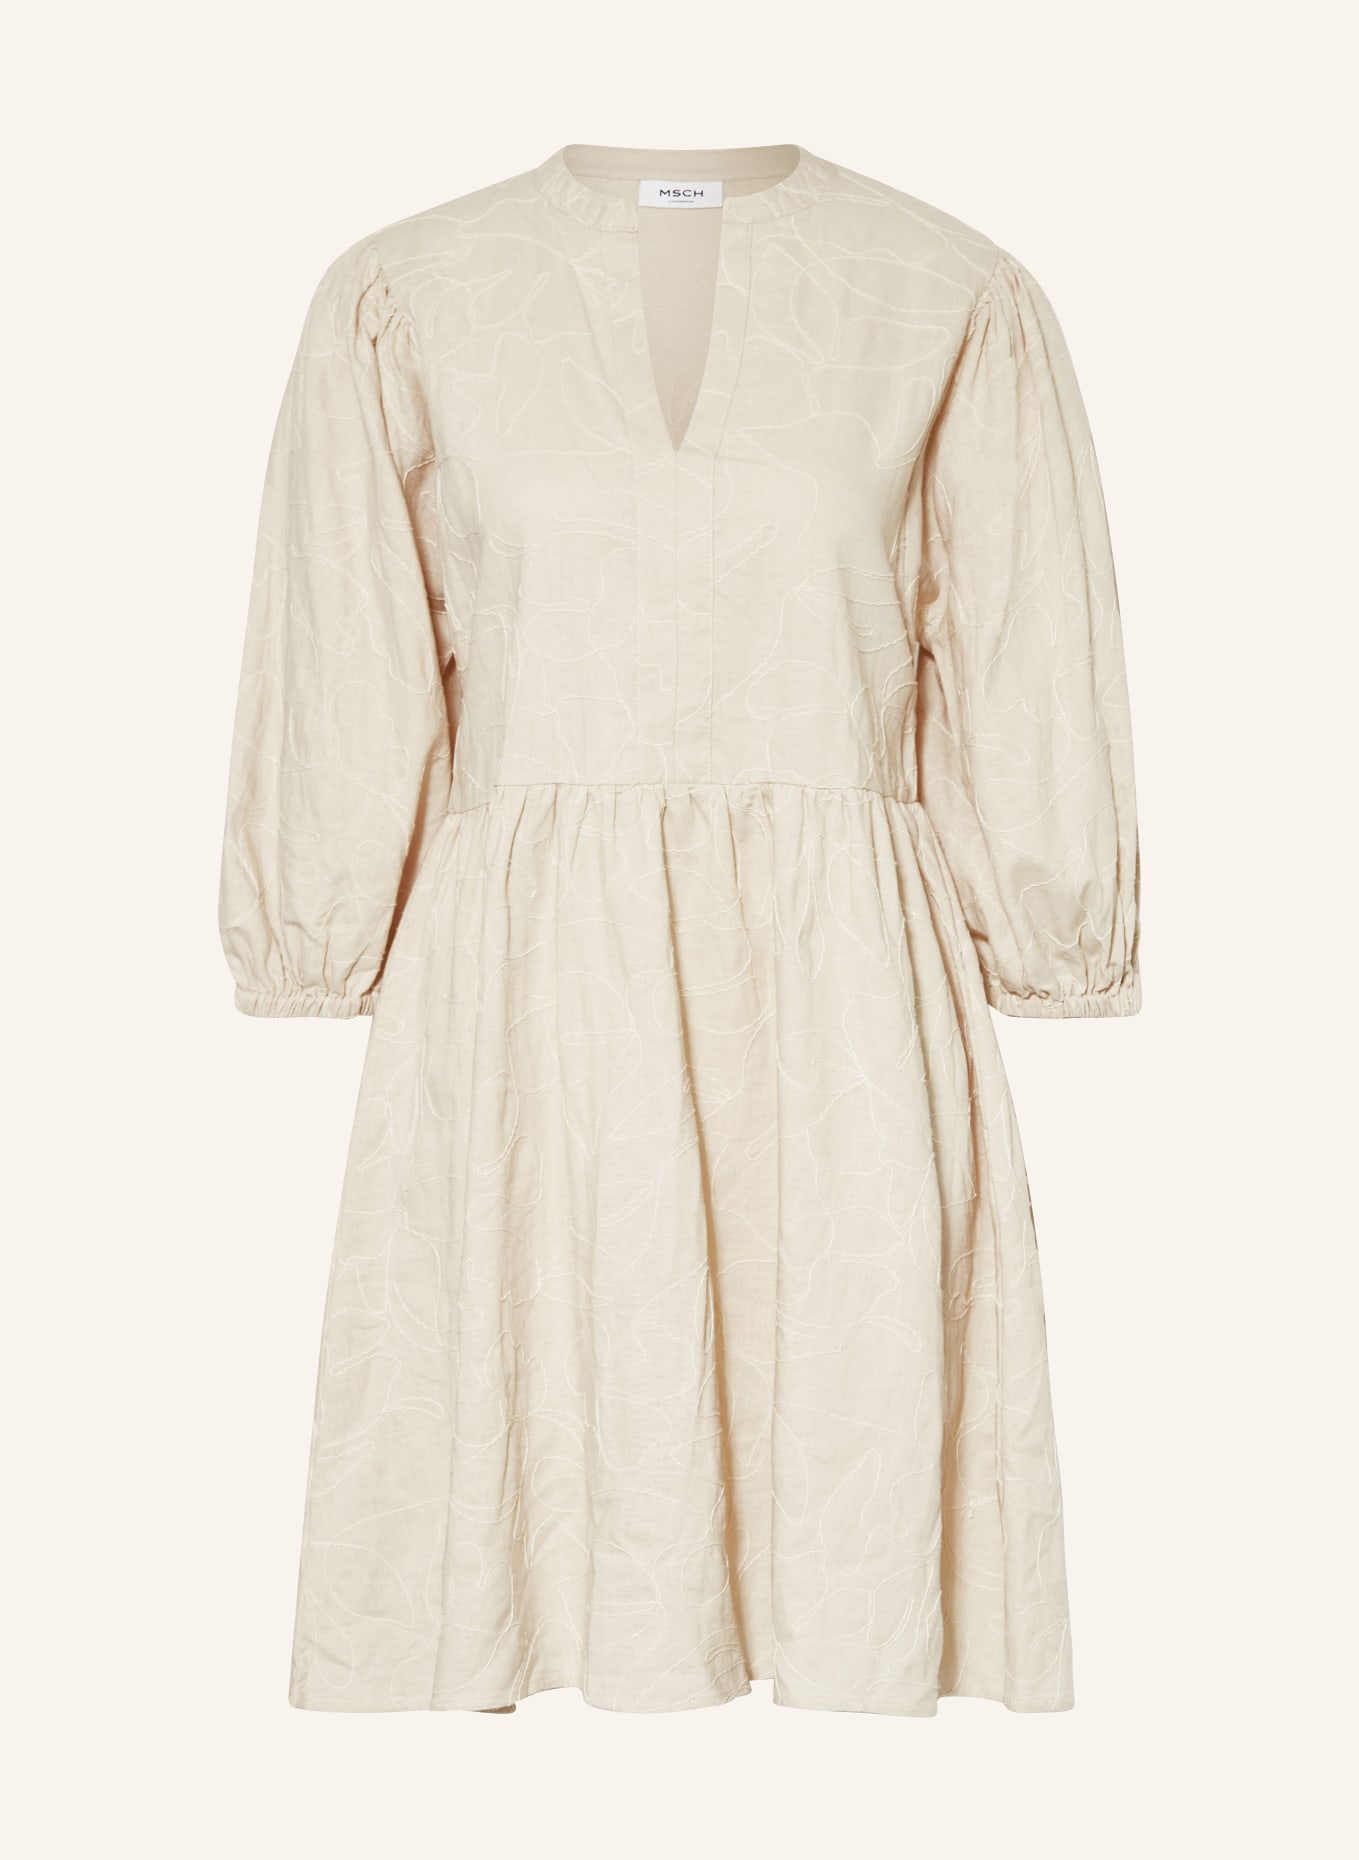 MSCH COPENHAGEN Kleid MSCHILEKTRA mit 3/4-Arm, Farbe: BEIGE (Bild 1)